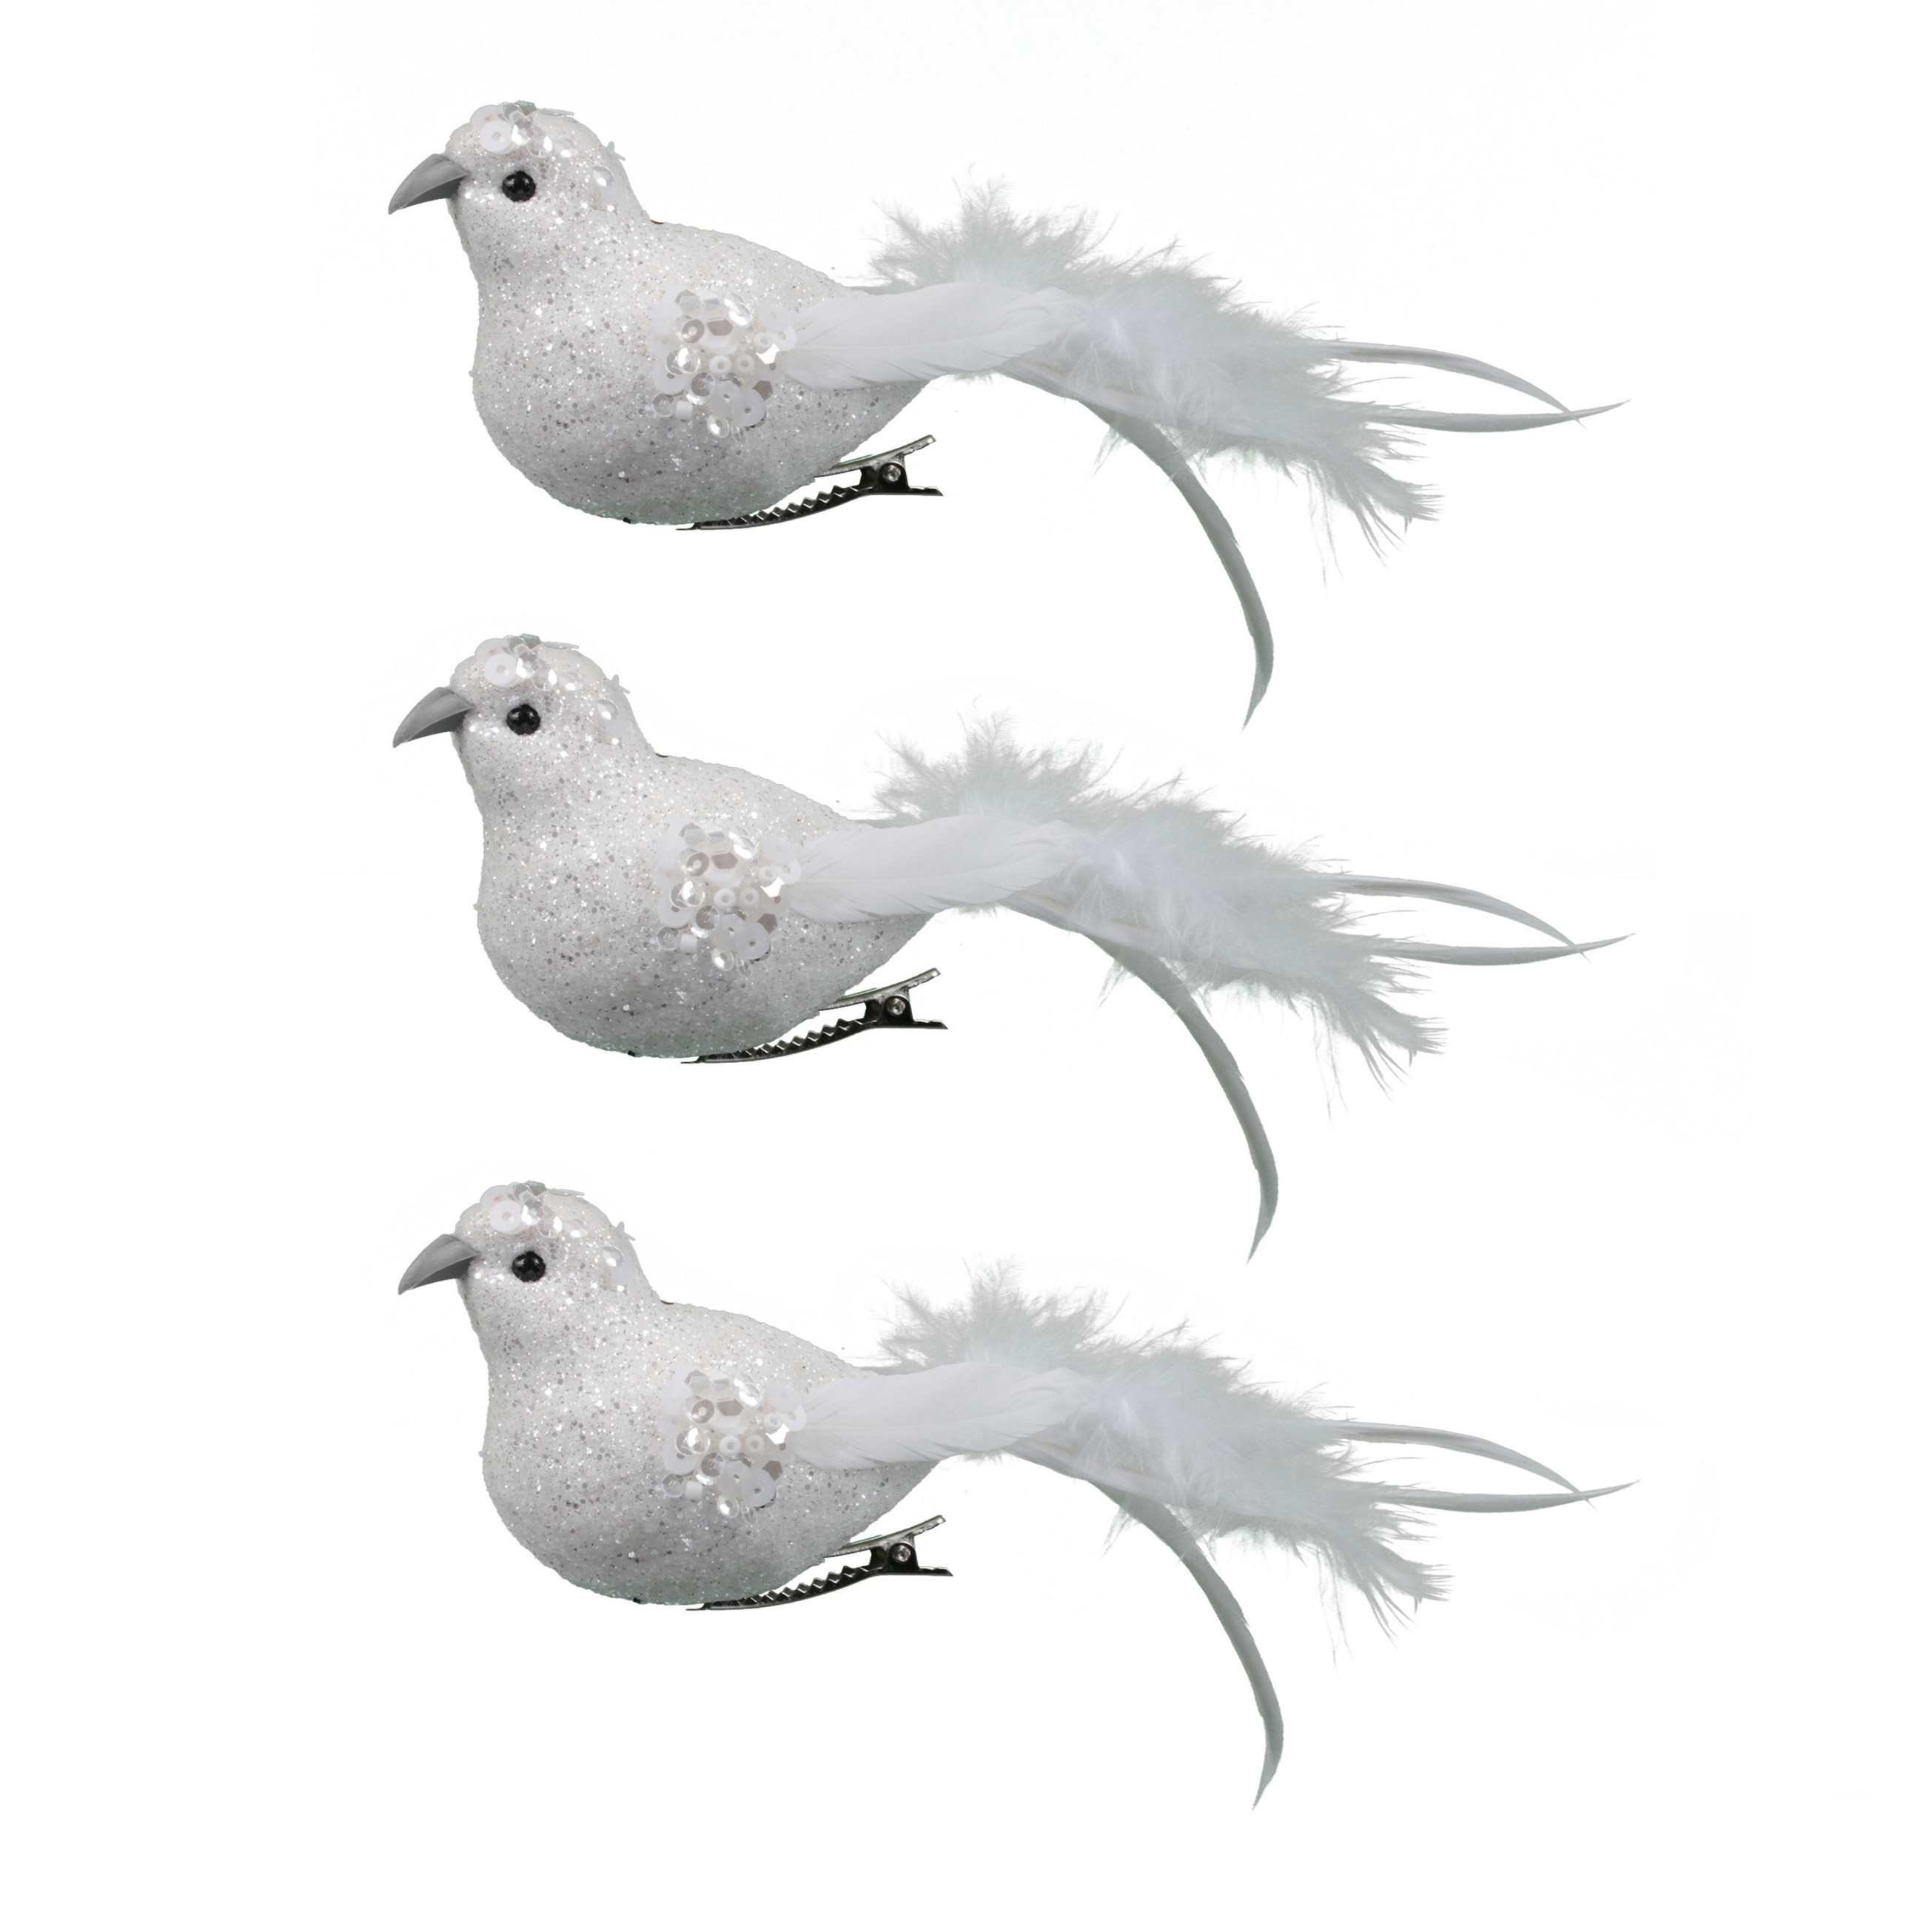 18x stuks decoratie vogels op clip glitter wit 18 cm - Decoratievogeltjes/kerstboomversiering/bruiloftversiering